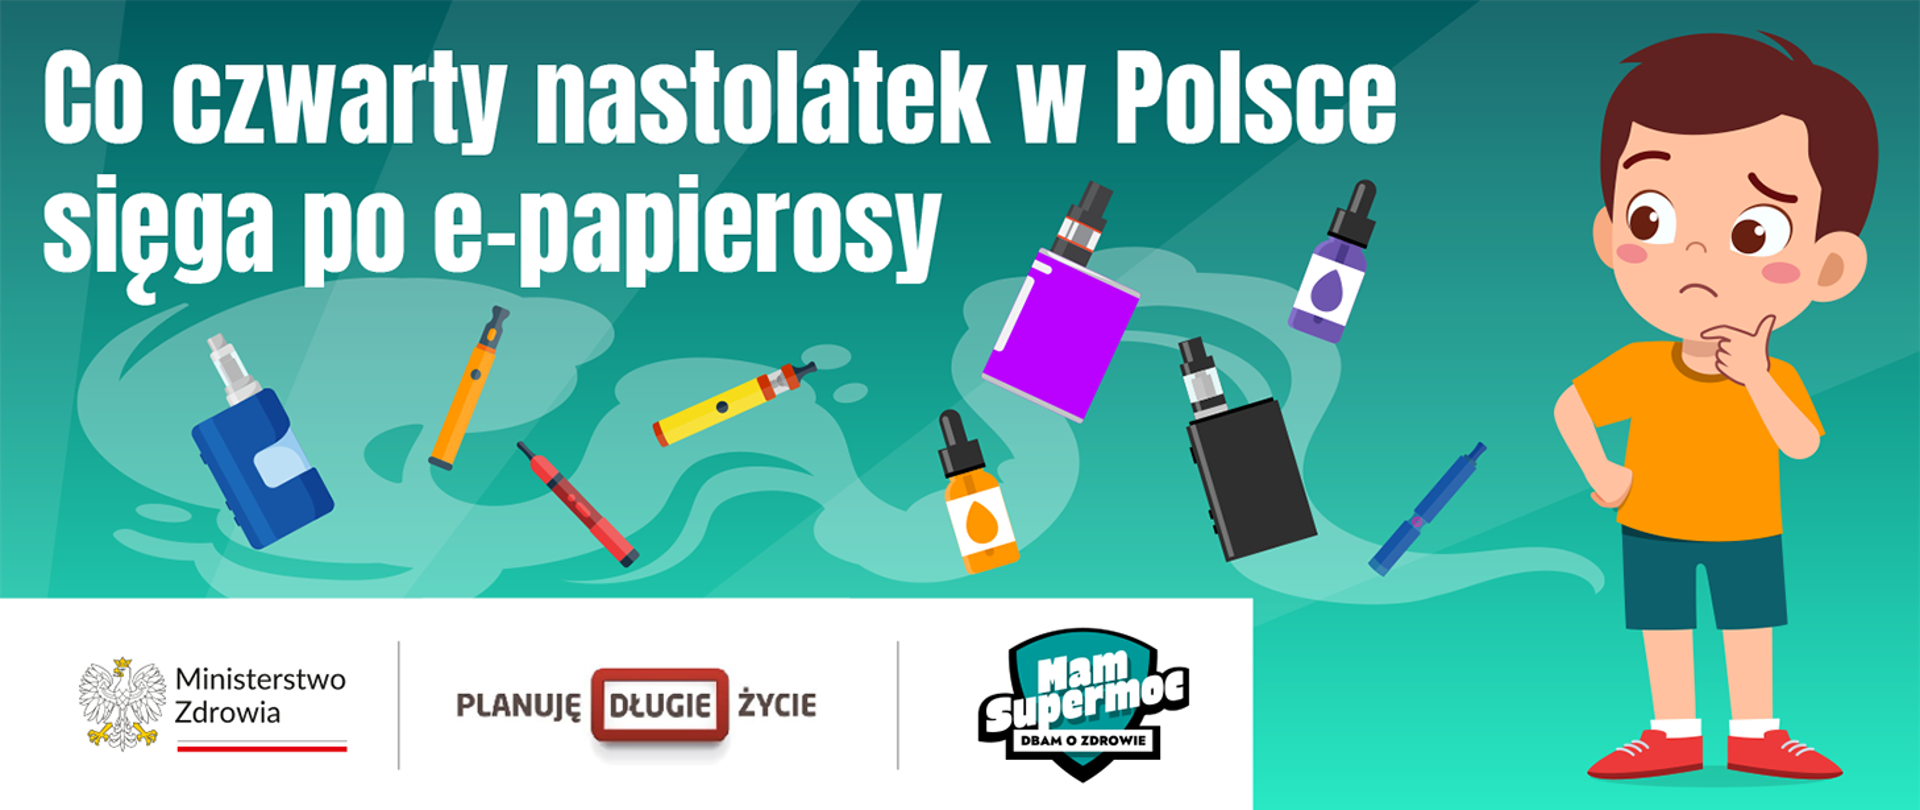 Co czwarty nastolatek w Polsce sięga po e-papierosy. Napis na zielonym tle z prawej strony zamyślony chłopiec, wokół różne rodzaje e-papierosów. Orzeł -Ministerstwo Zdrowia, logo.